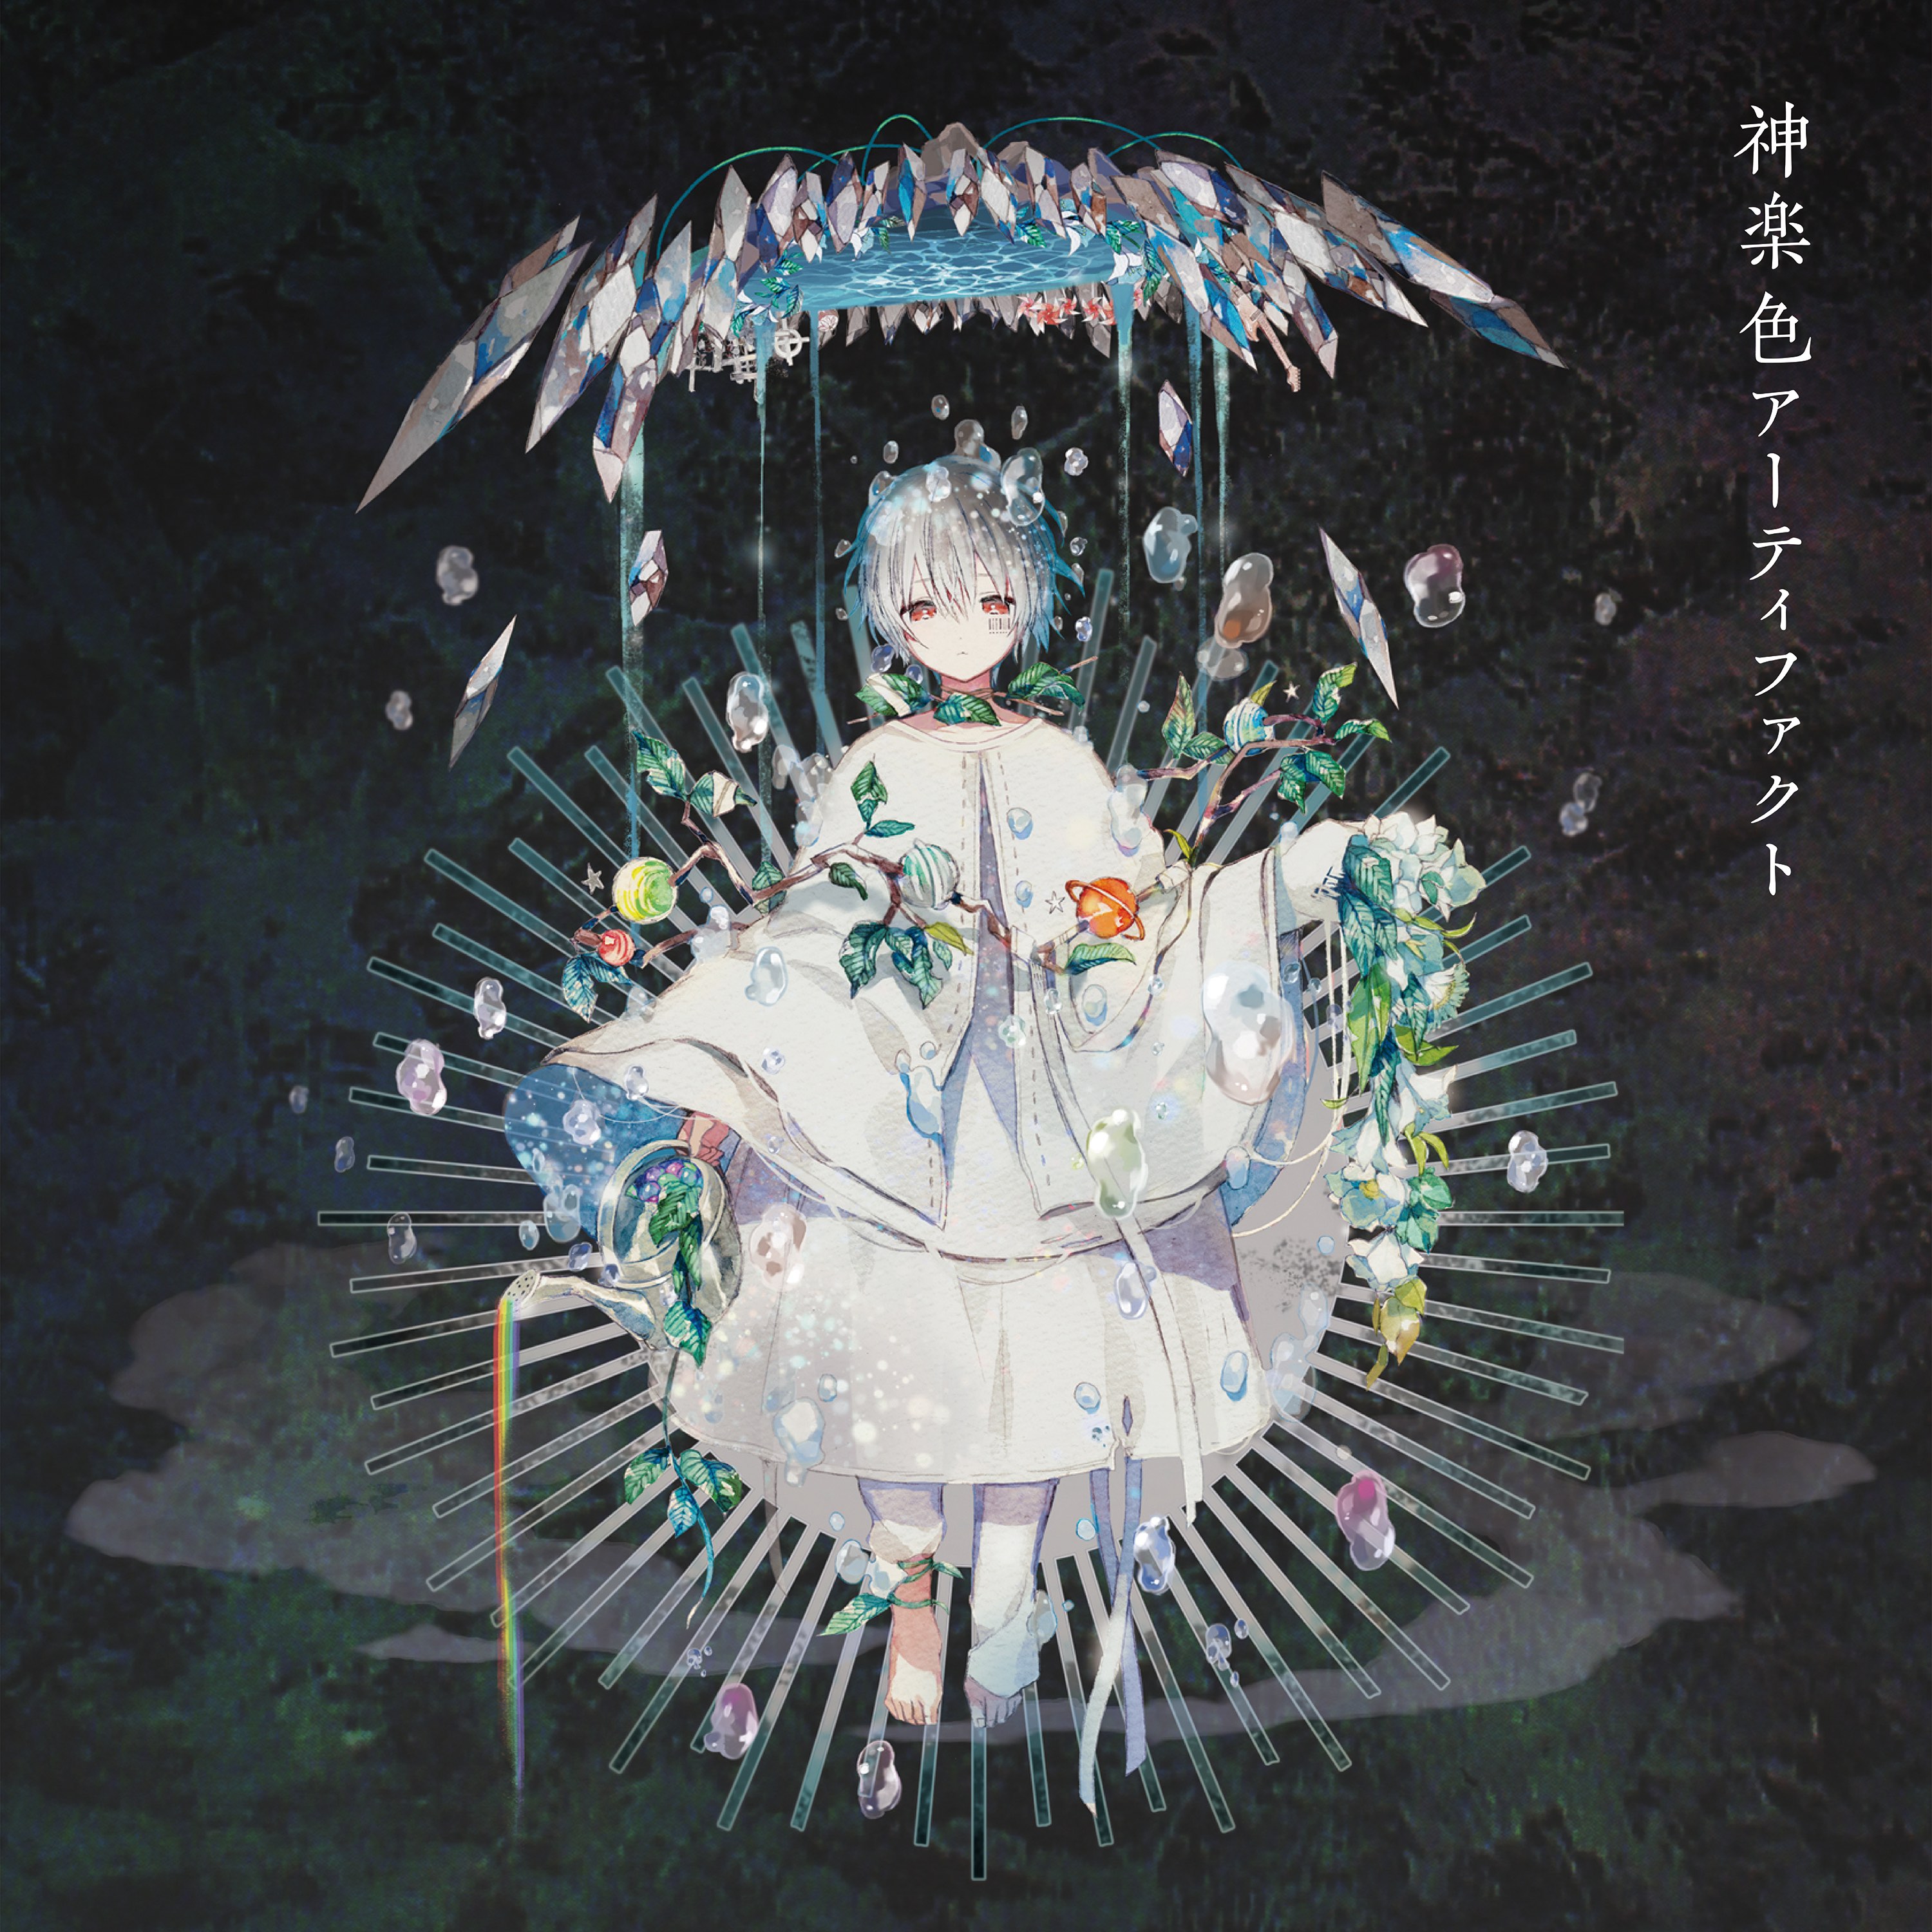 Cover for『Mafumafu - Haikei, Sakura Maichiru Kono Hi ni』from the release『Kagurairo Artifact』